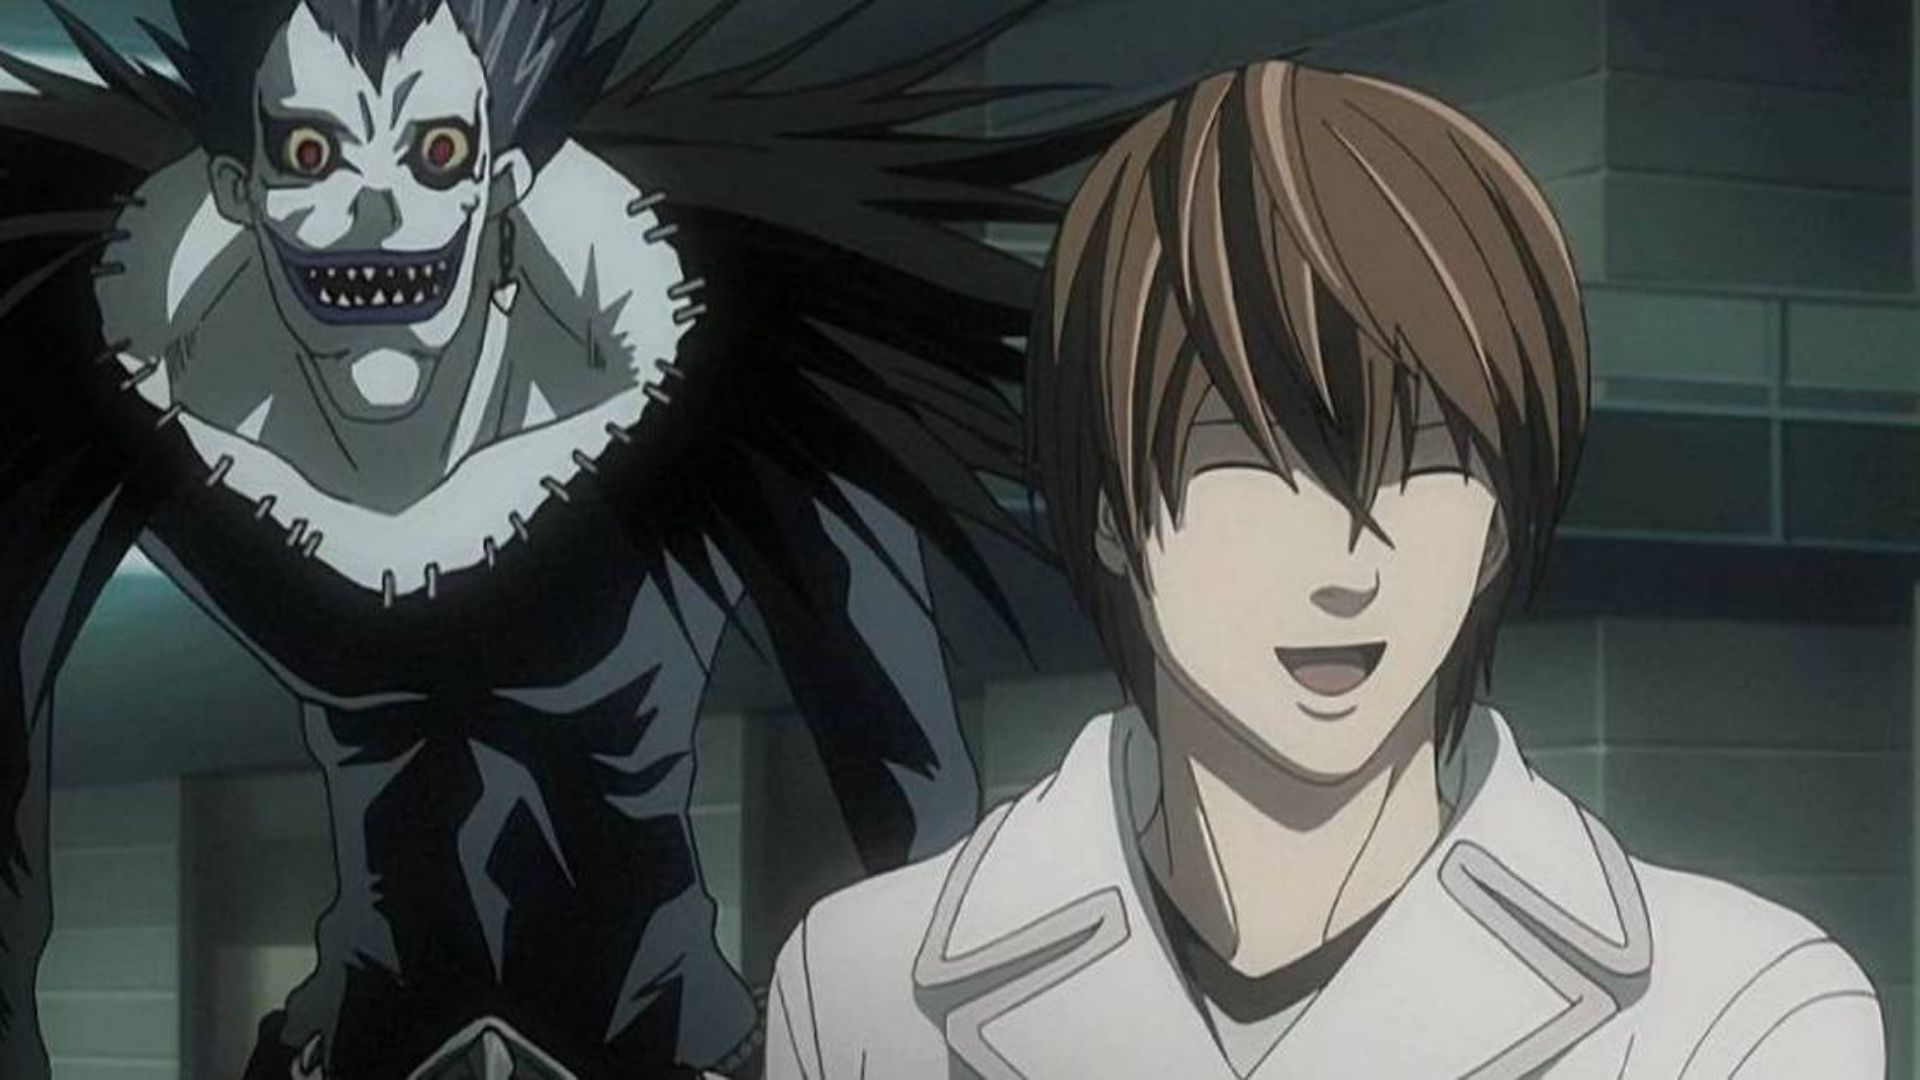 Ator da série Heroes irá participar da adaptação de Death Note